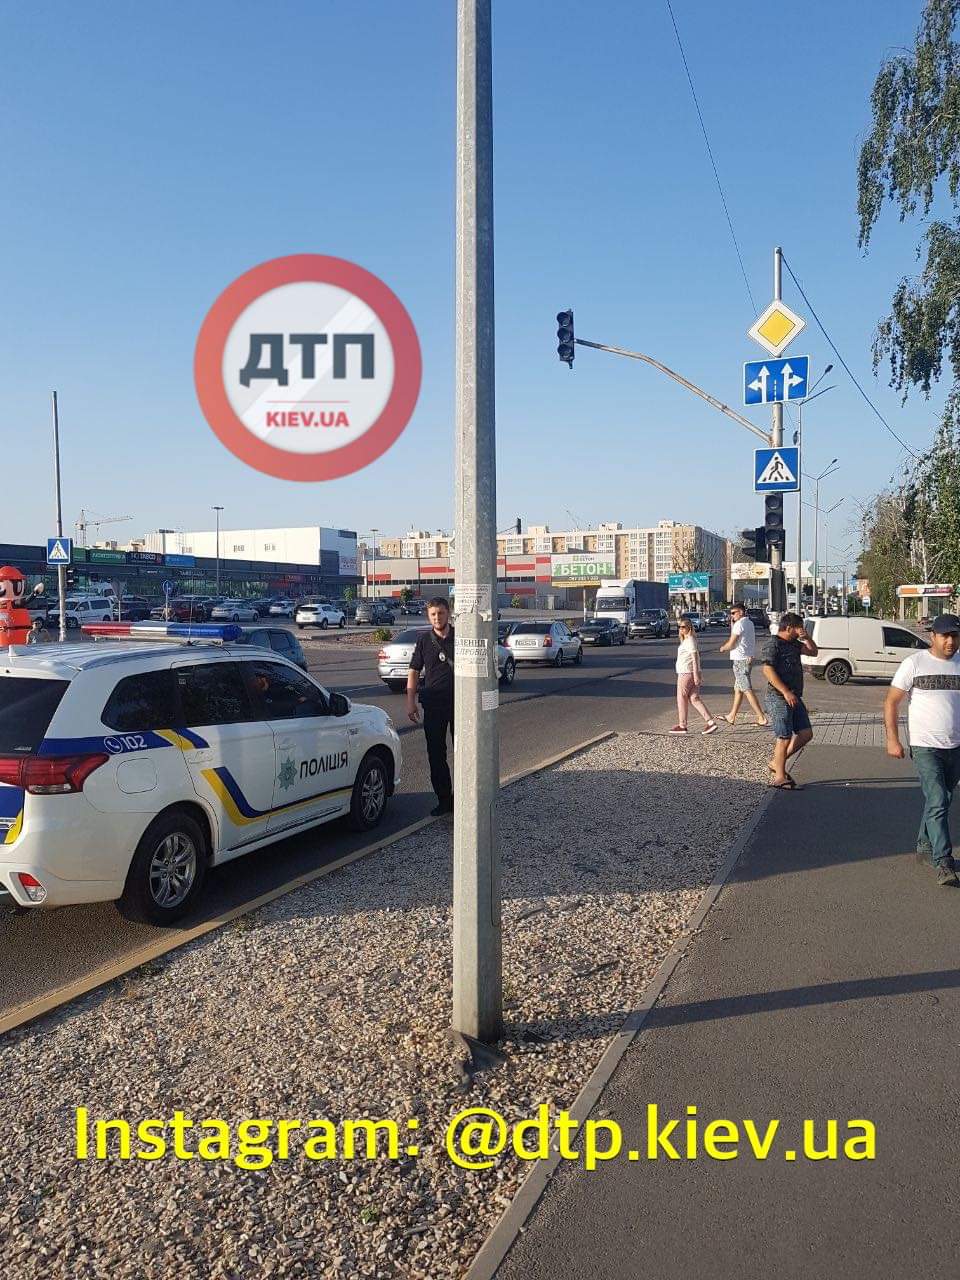 ДТП на Киевщине - неизвестный автомобиль сбил девушку на светофоре и скрылся: пострадавшую с травмами госпитализировали